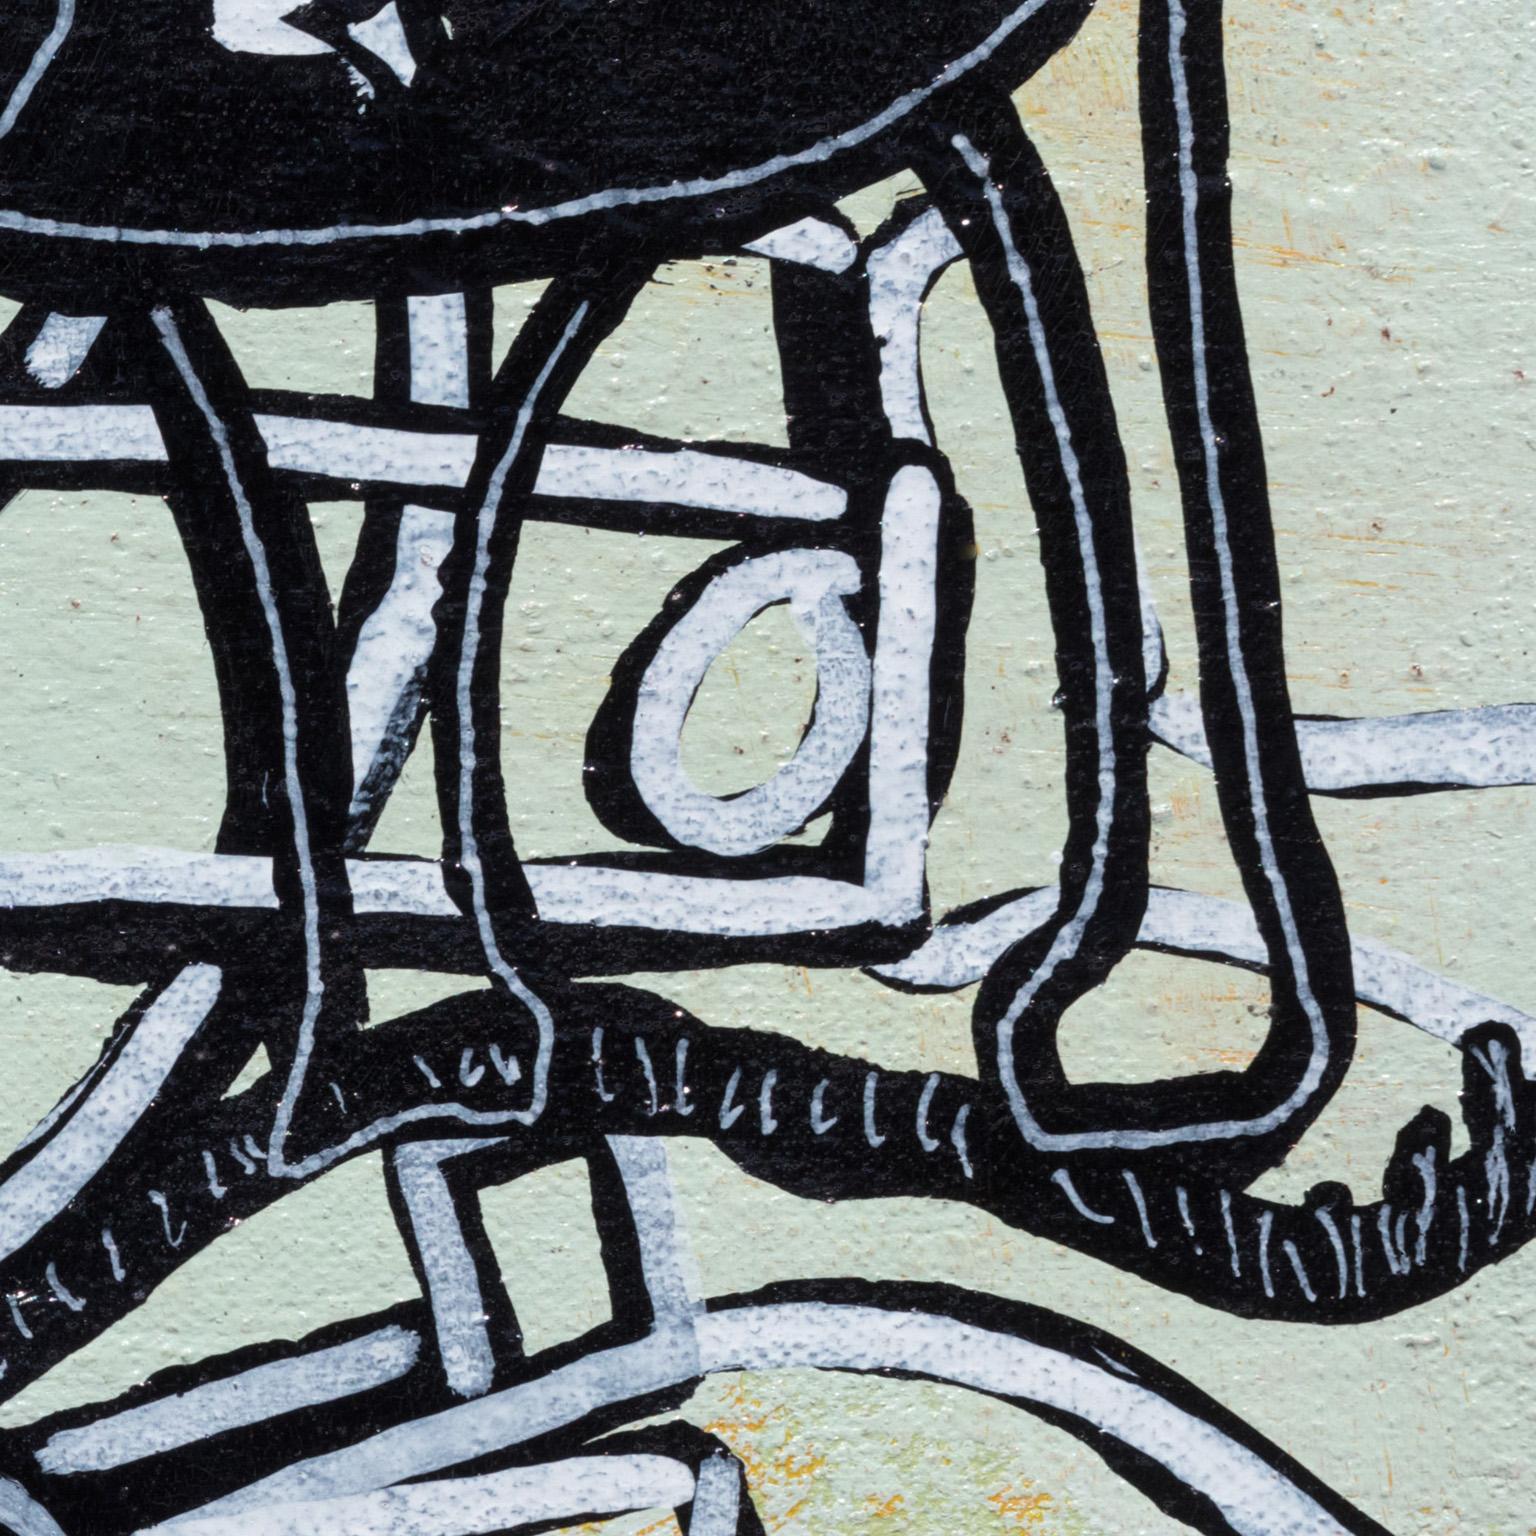 Gun Control de Parris Jaru est une peinture à l'huile surréaliste de 9 x 12 pouces représentant un chien, un canard et un pistolet. Les couleurs primaires sont l'orange vif et le noir. Un épais empâtement de peinture recouvre la surface. Jaru crée